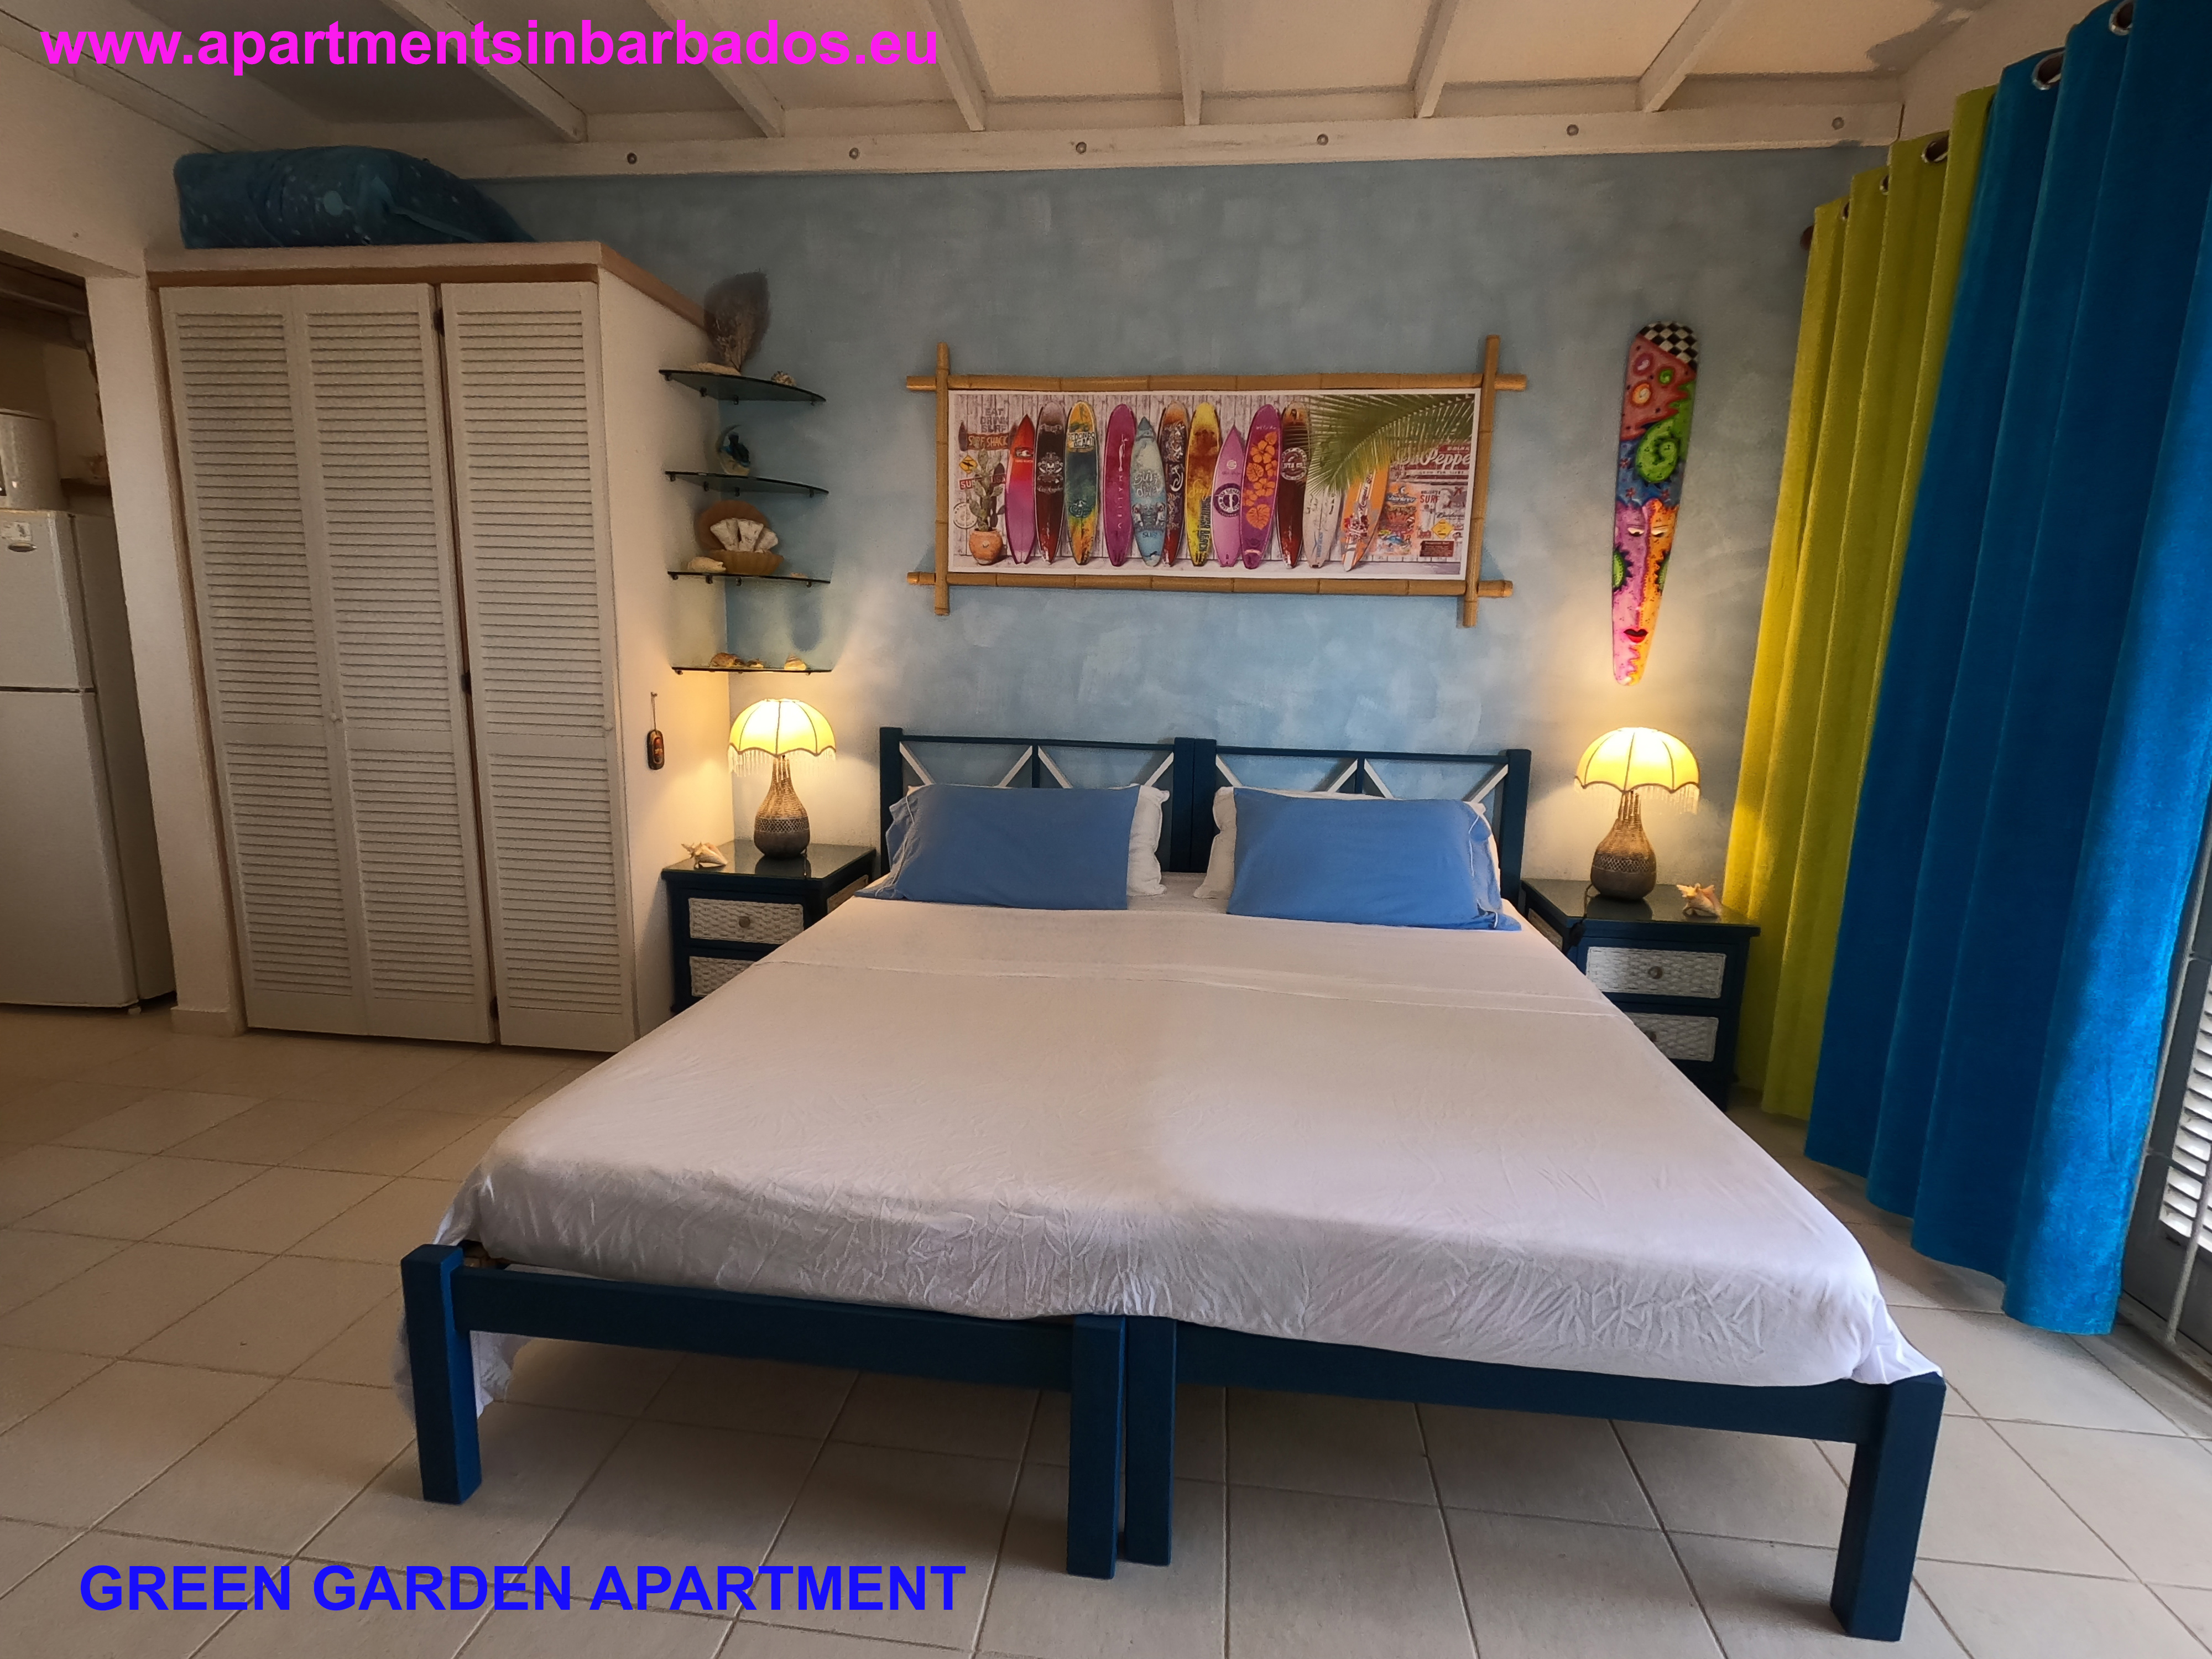 Green Garden Apartment - Bedroom